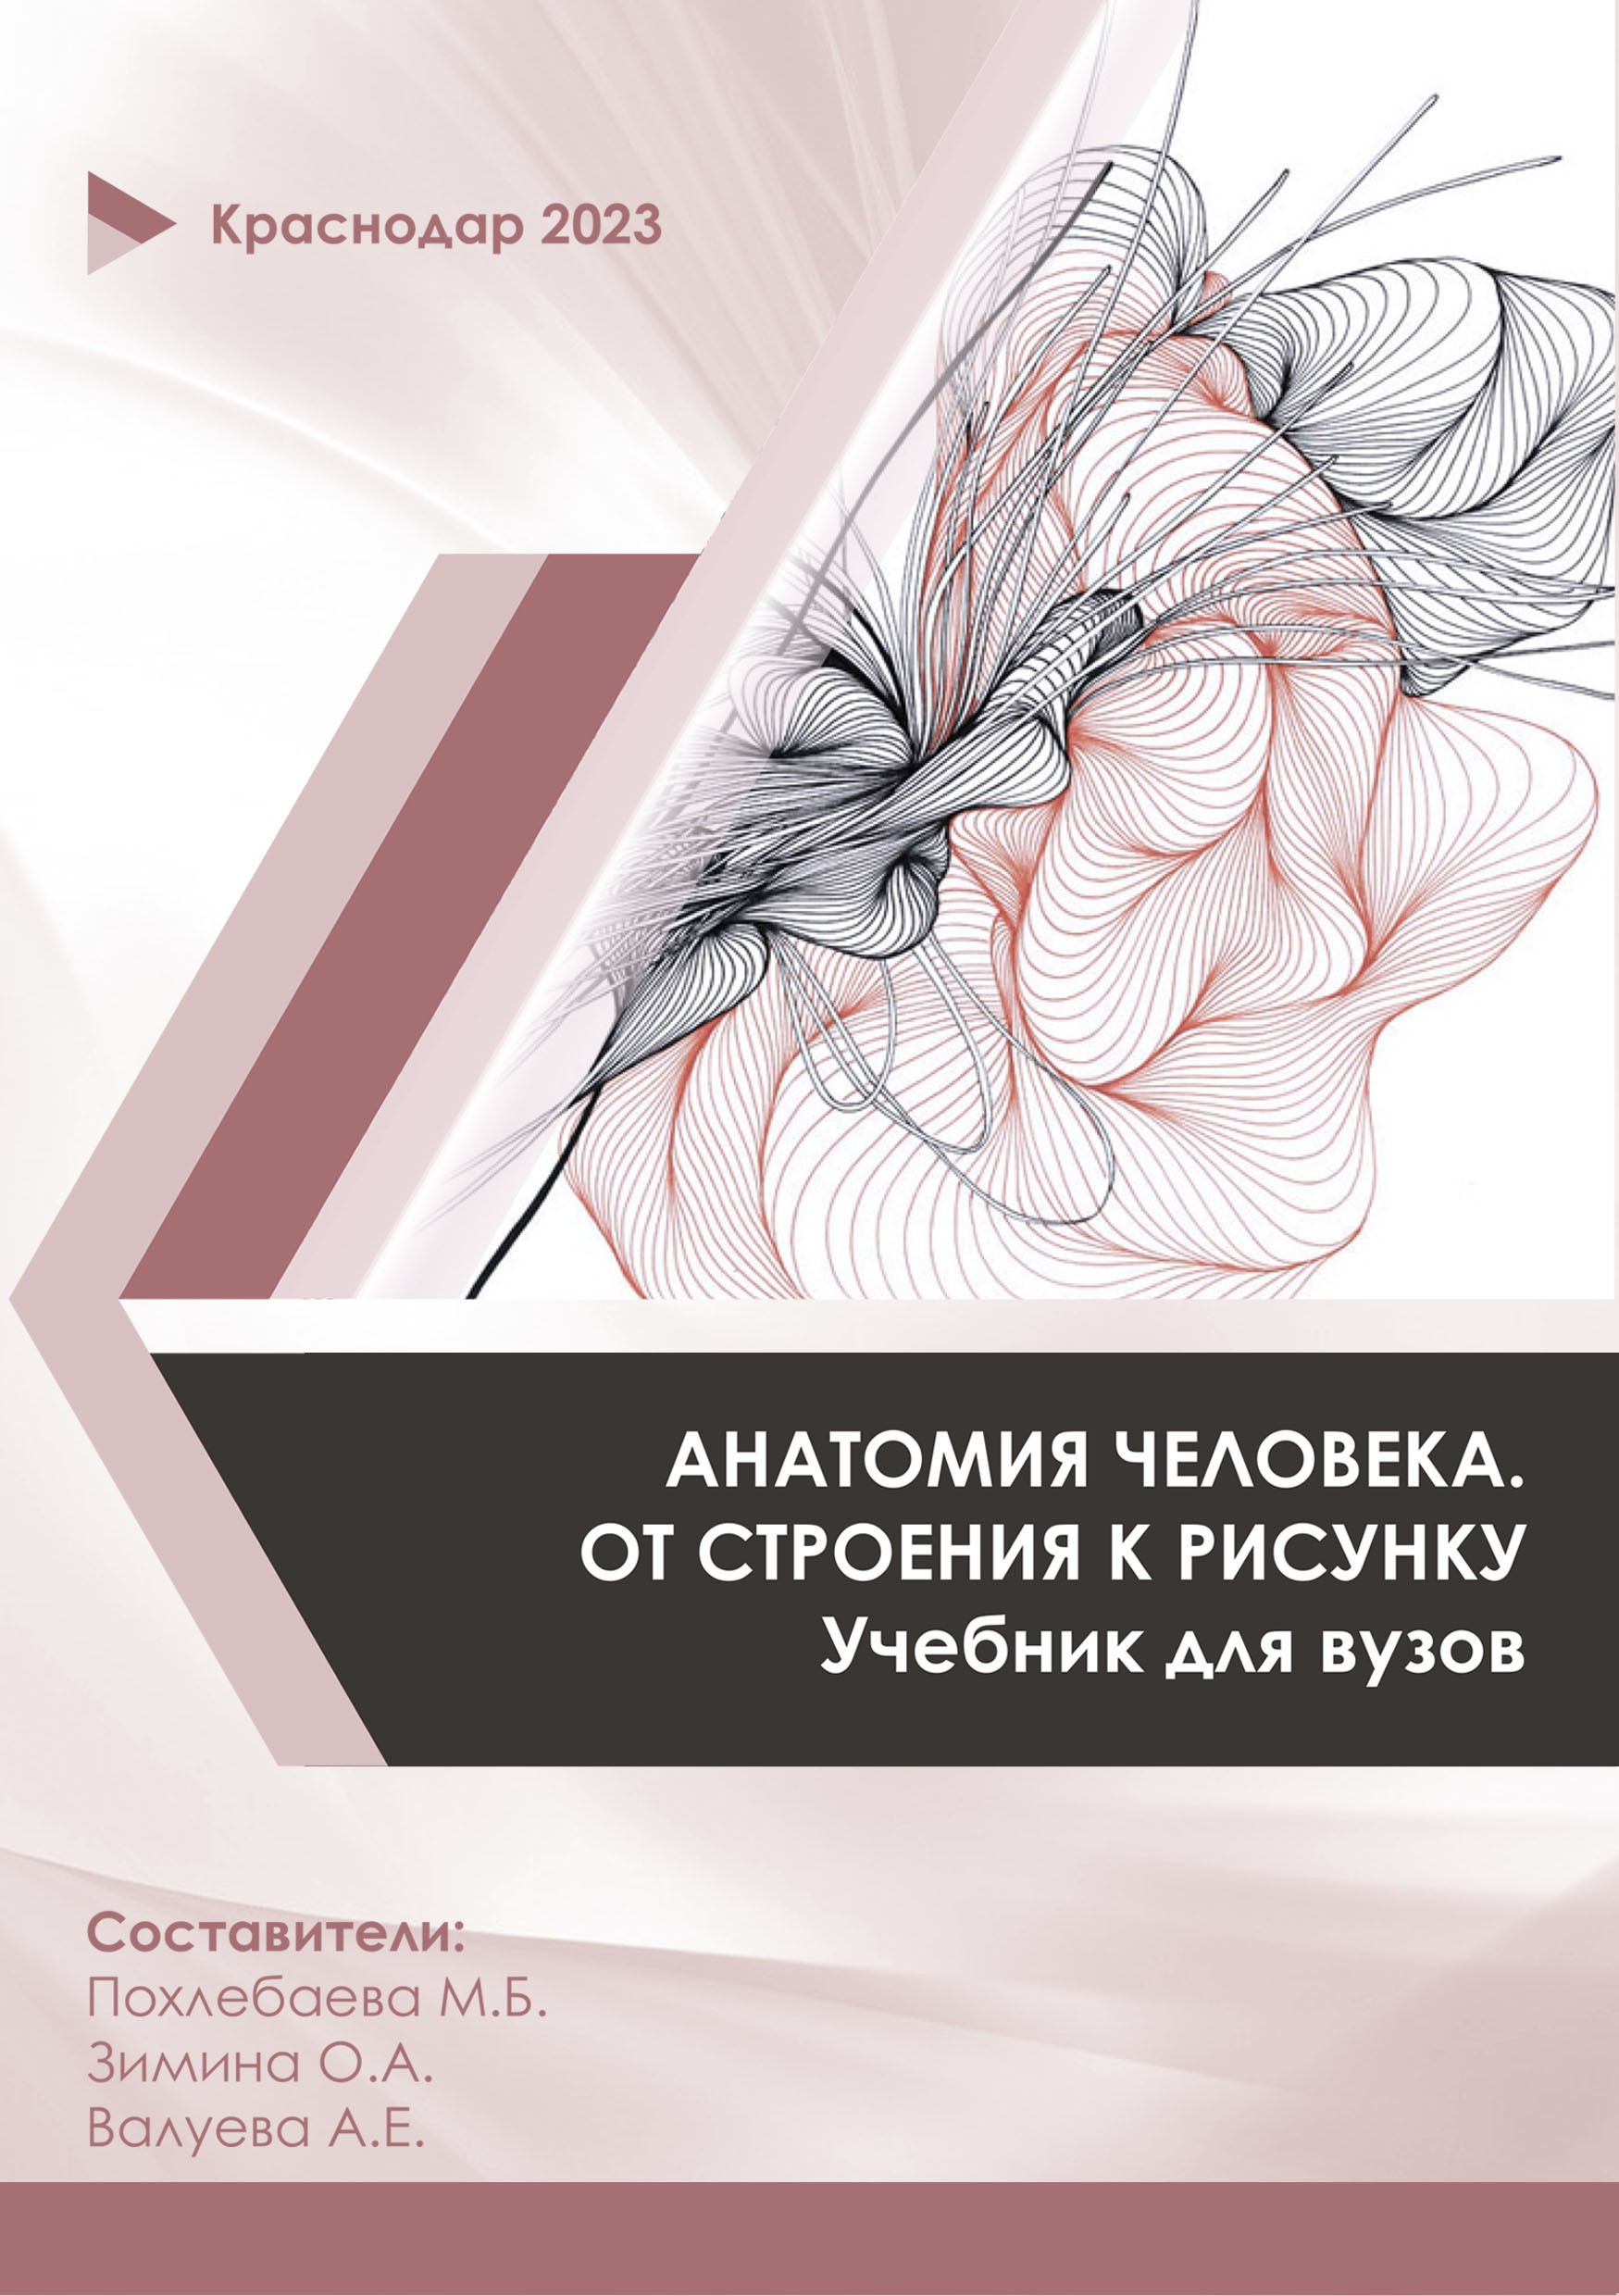 Пластическая анатомия человека - от теории к практике. М.Б. Похлебаева, О.А. Зимина, А.Е. Валуева